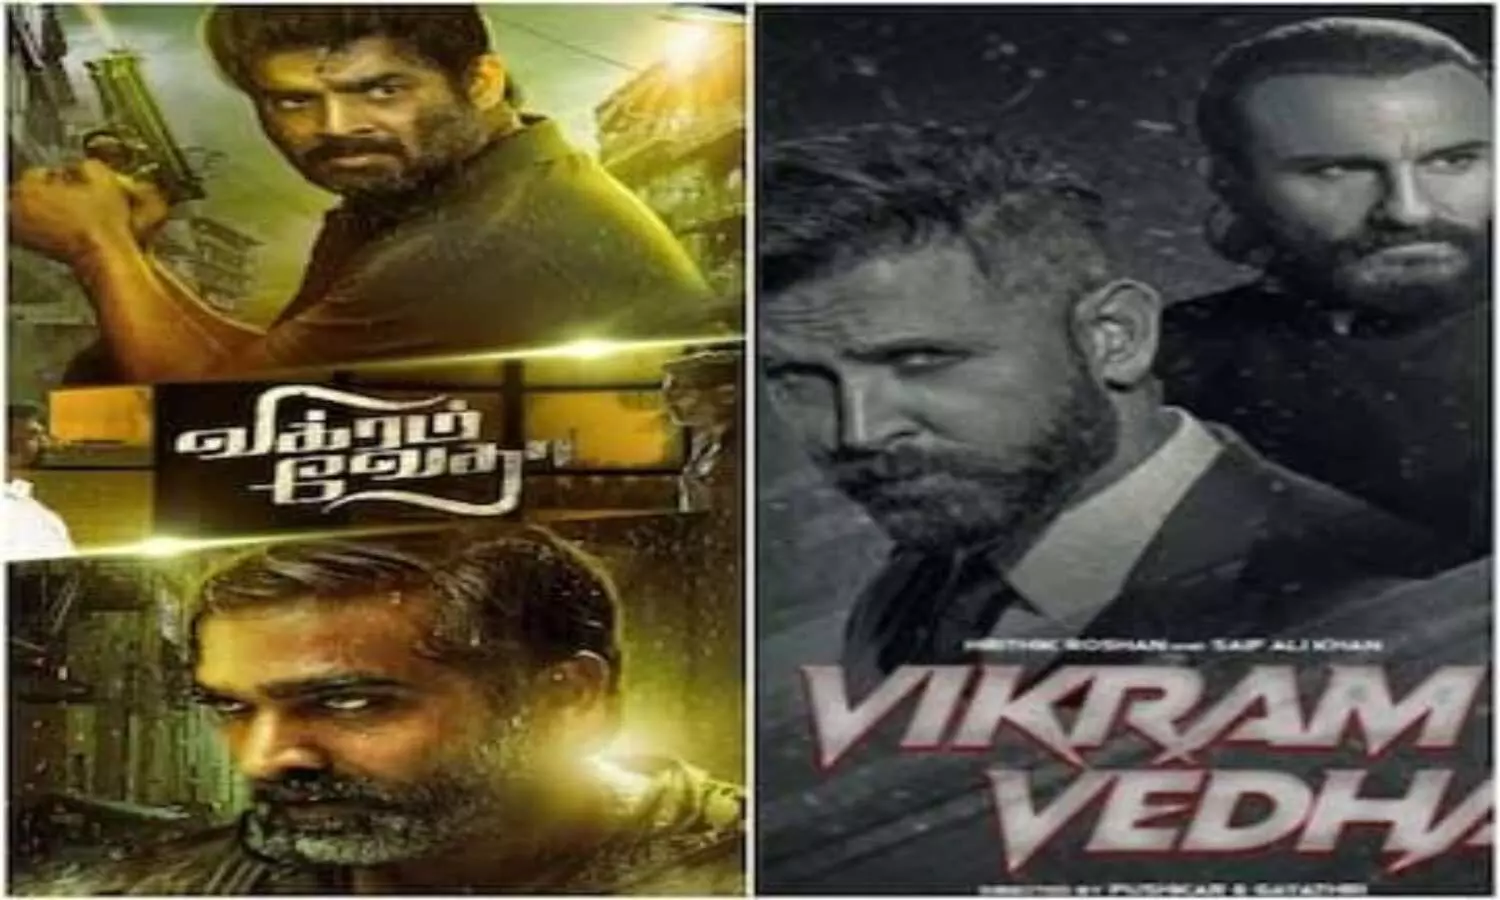 Vikram Vedha: साउथ और बॉलीवुड मूवी विक्रम वेधा के स्टार्स आर माधवन और विजय सेतुपथि के साथ ऋतिक और सैफ की तुलना